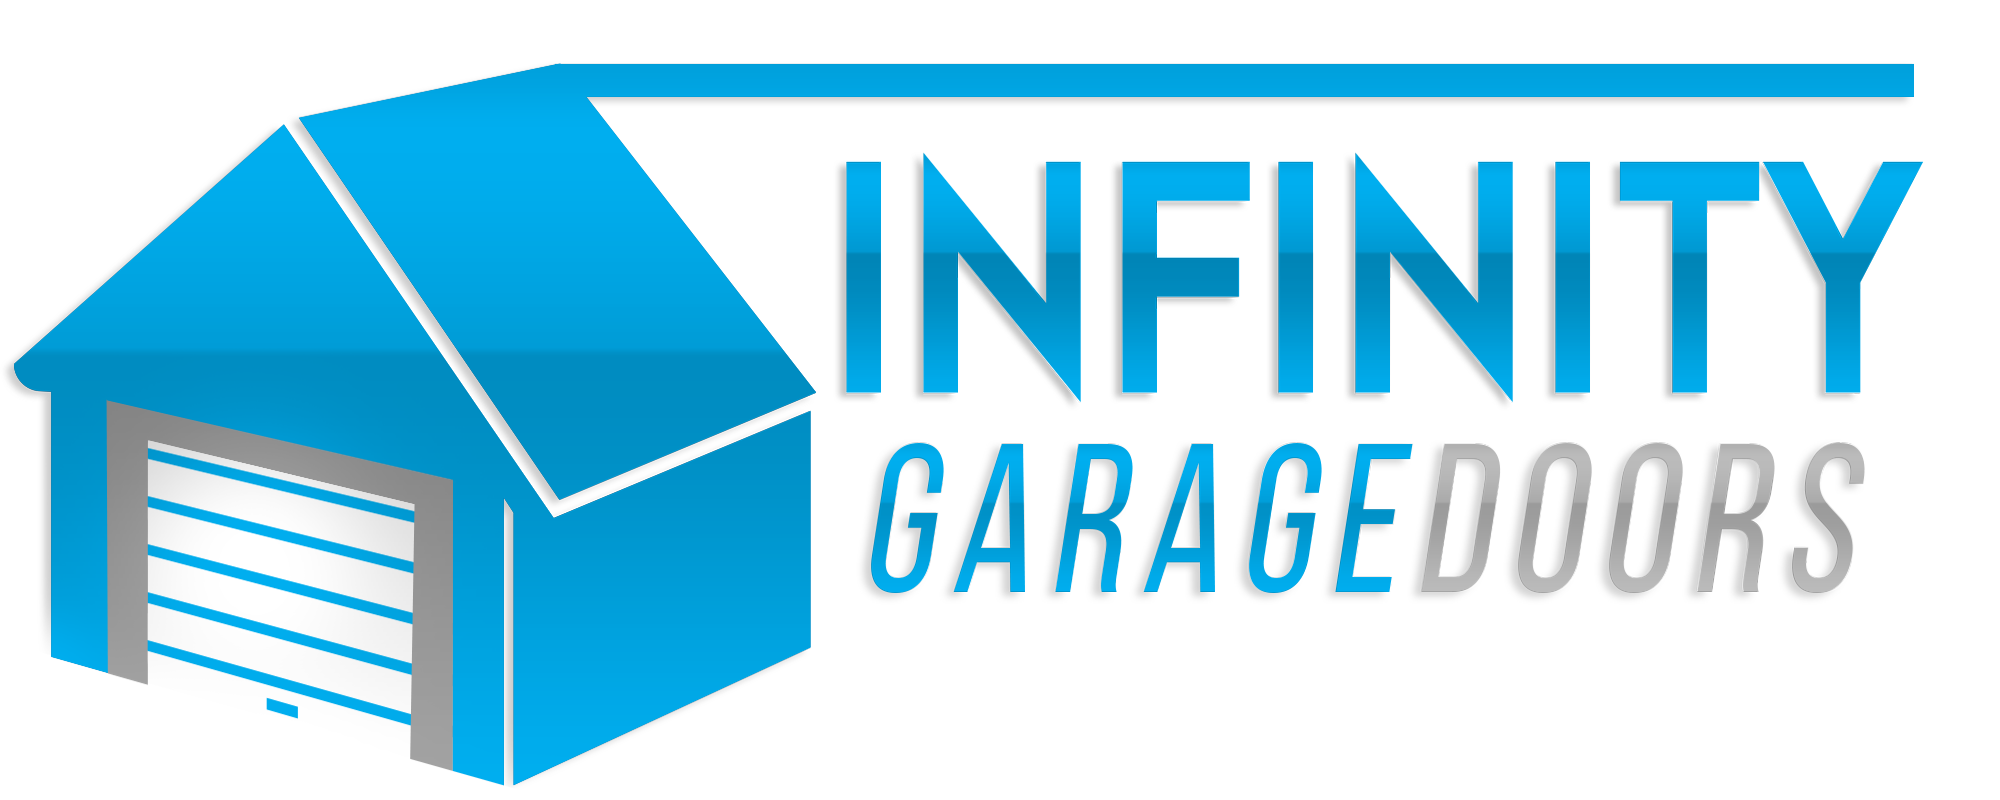 Infinity Garage Doors LLC's Logo